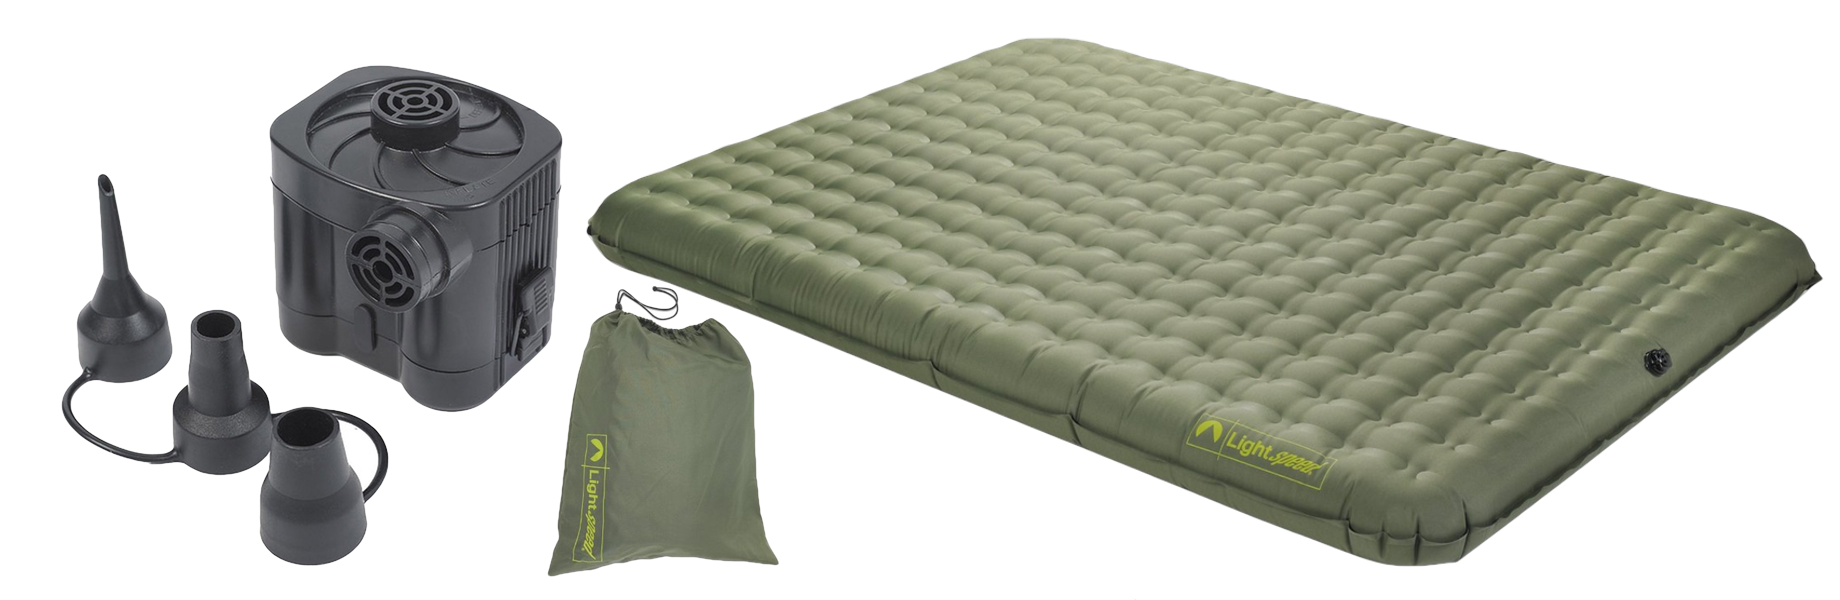 Lightspeed outdoors best air mattress